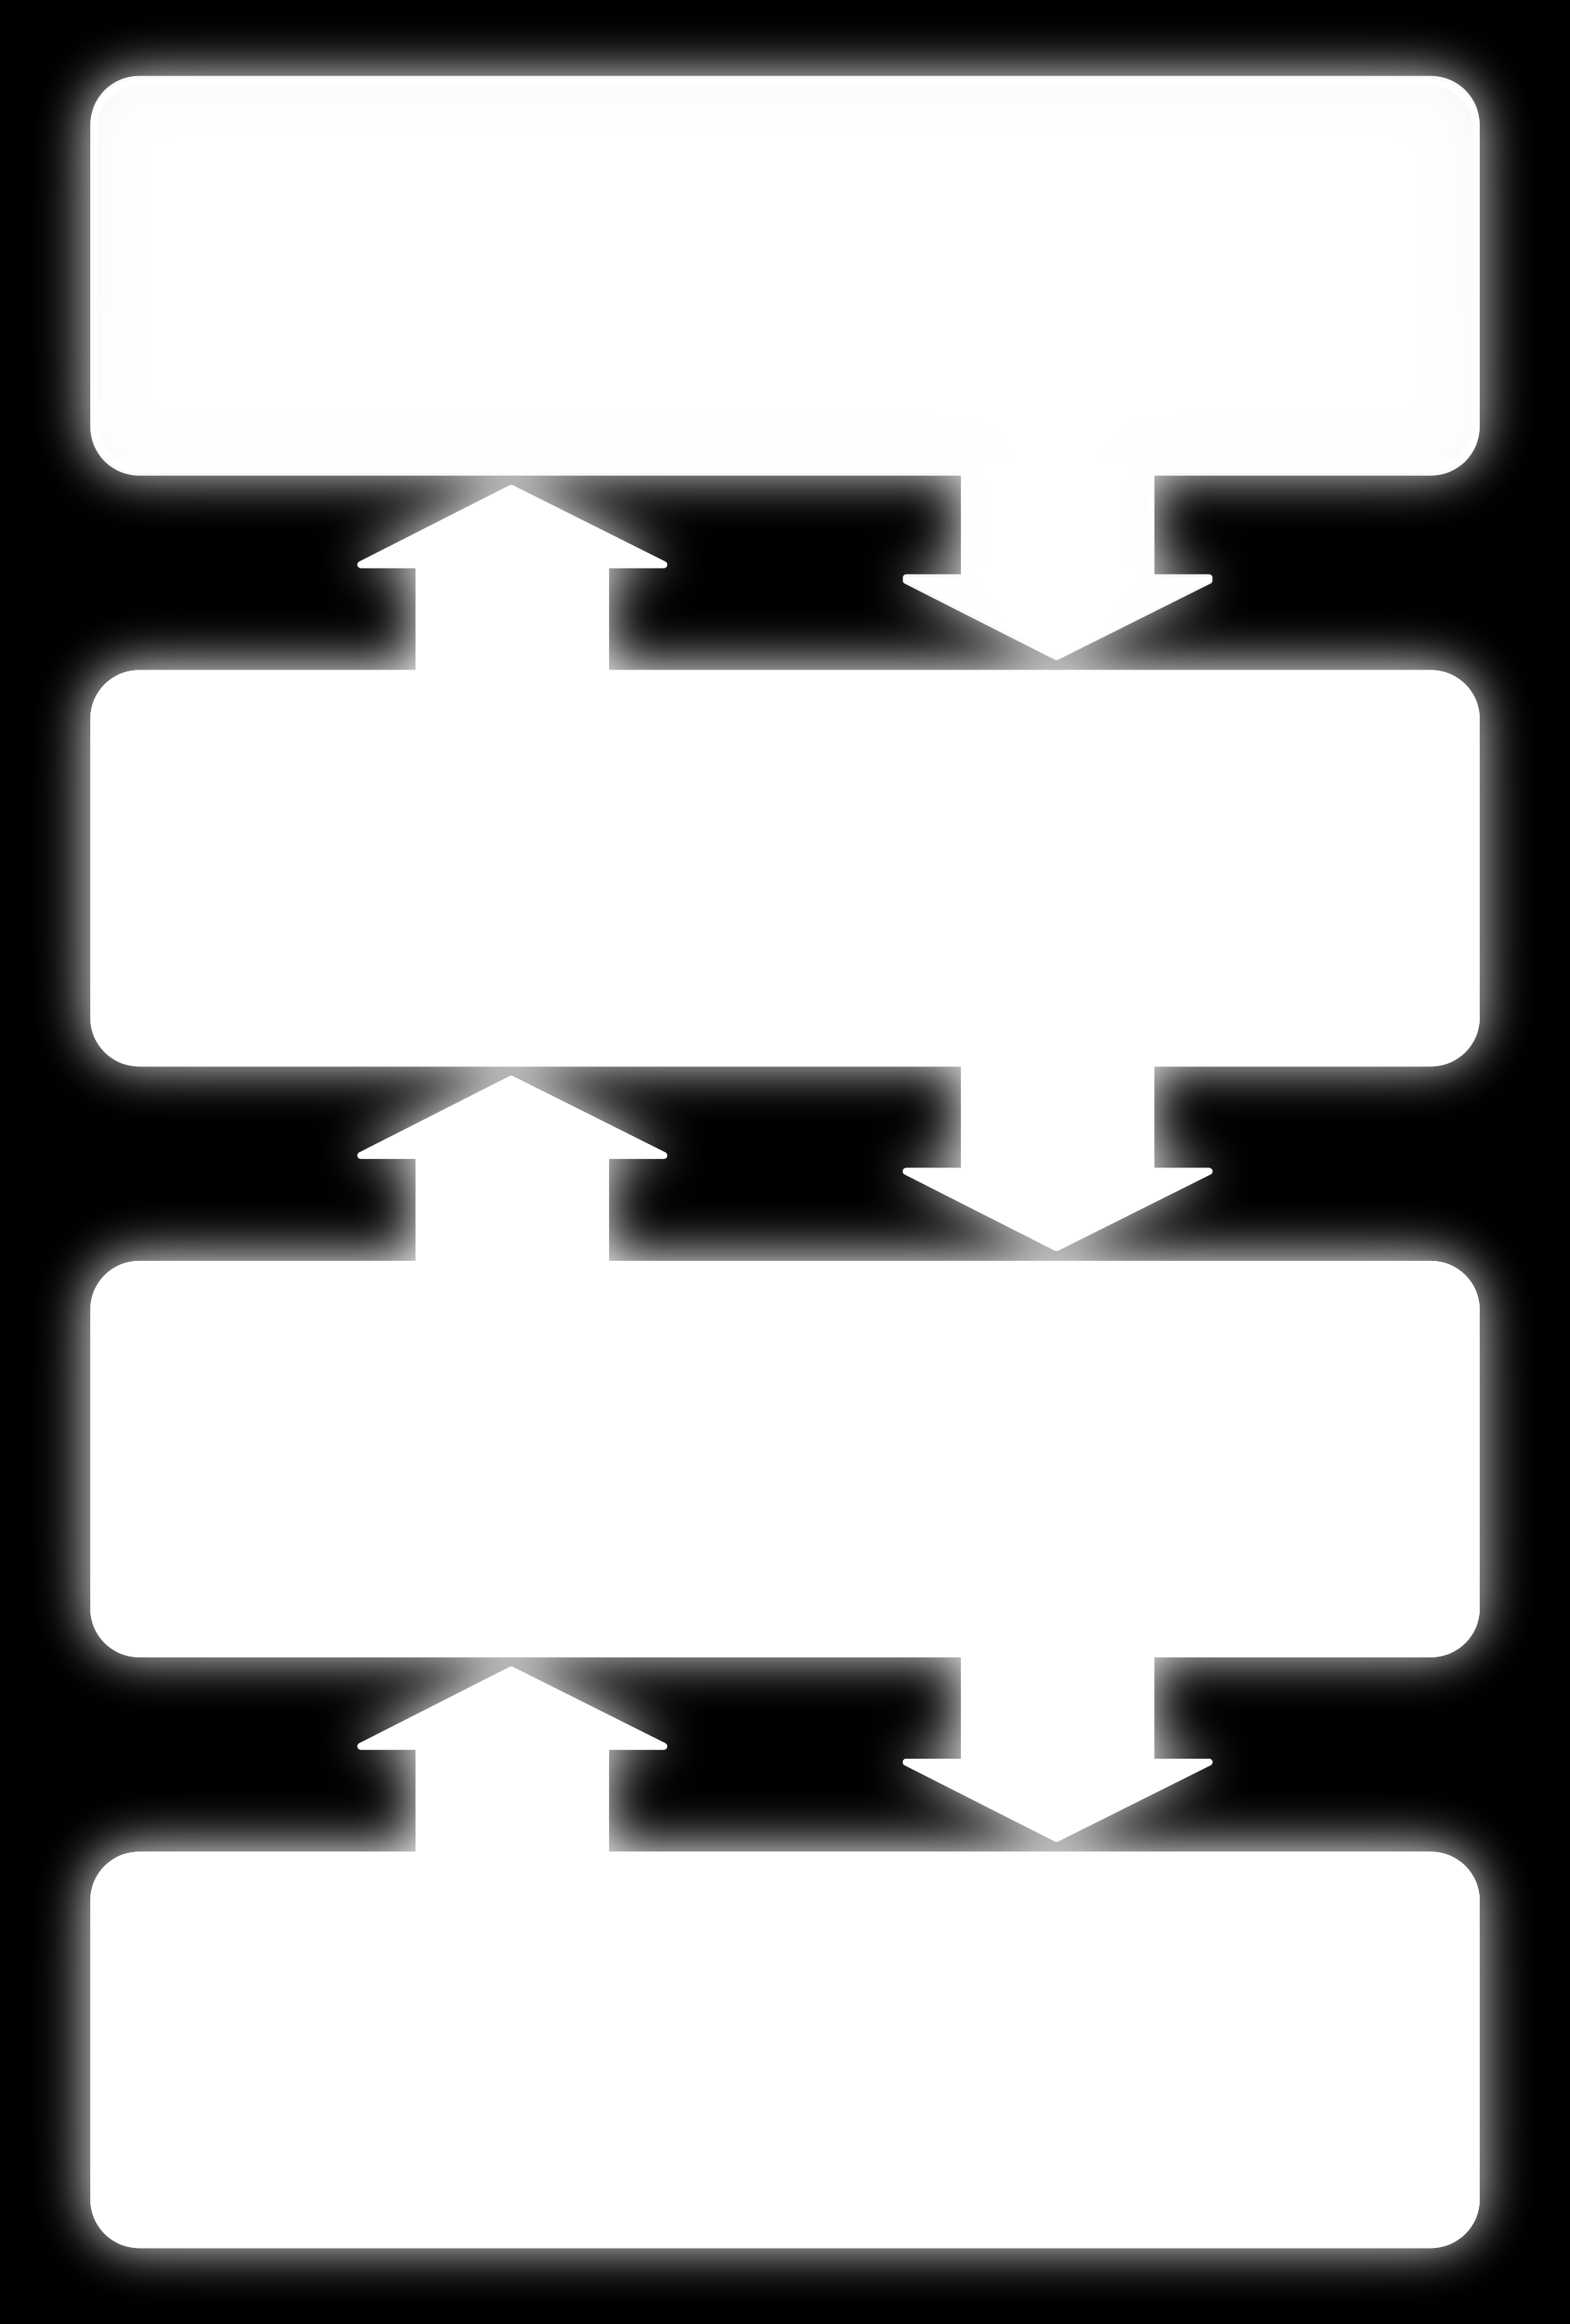 Les composants d un ordinateur Organisation logicielle structure hiérarchisée en couche / bloc / module chaque bloc réalise une tâche, indépendamment des autres, dialogue entre les programmes entrée